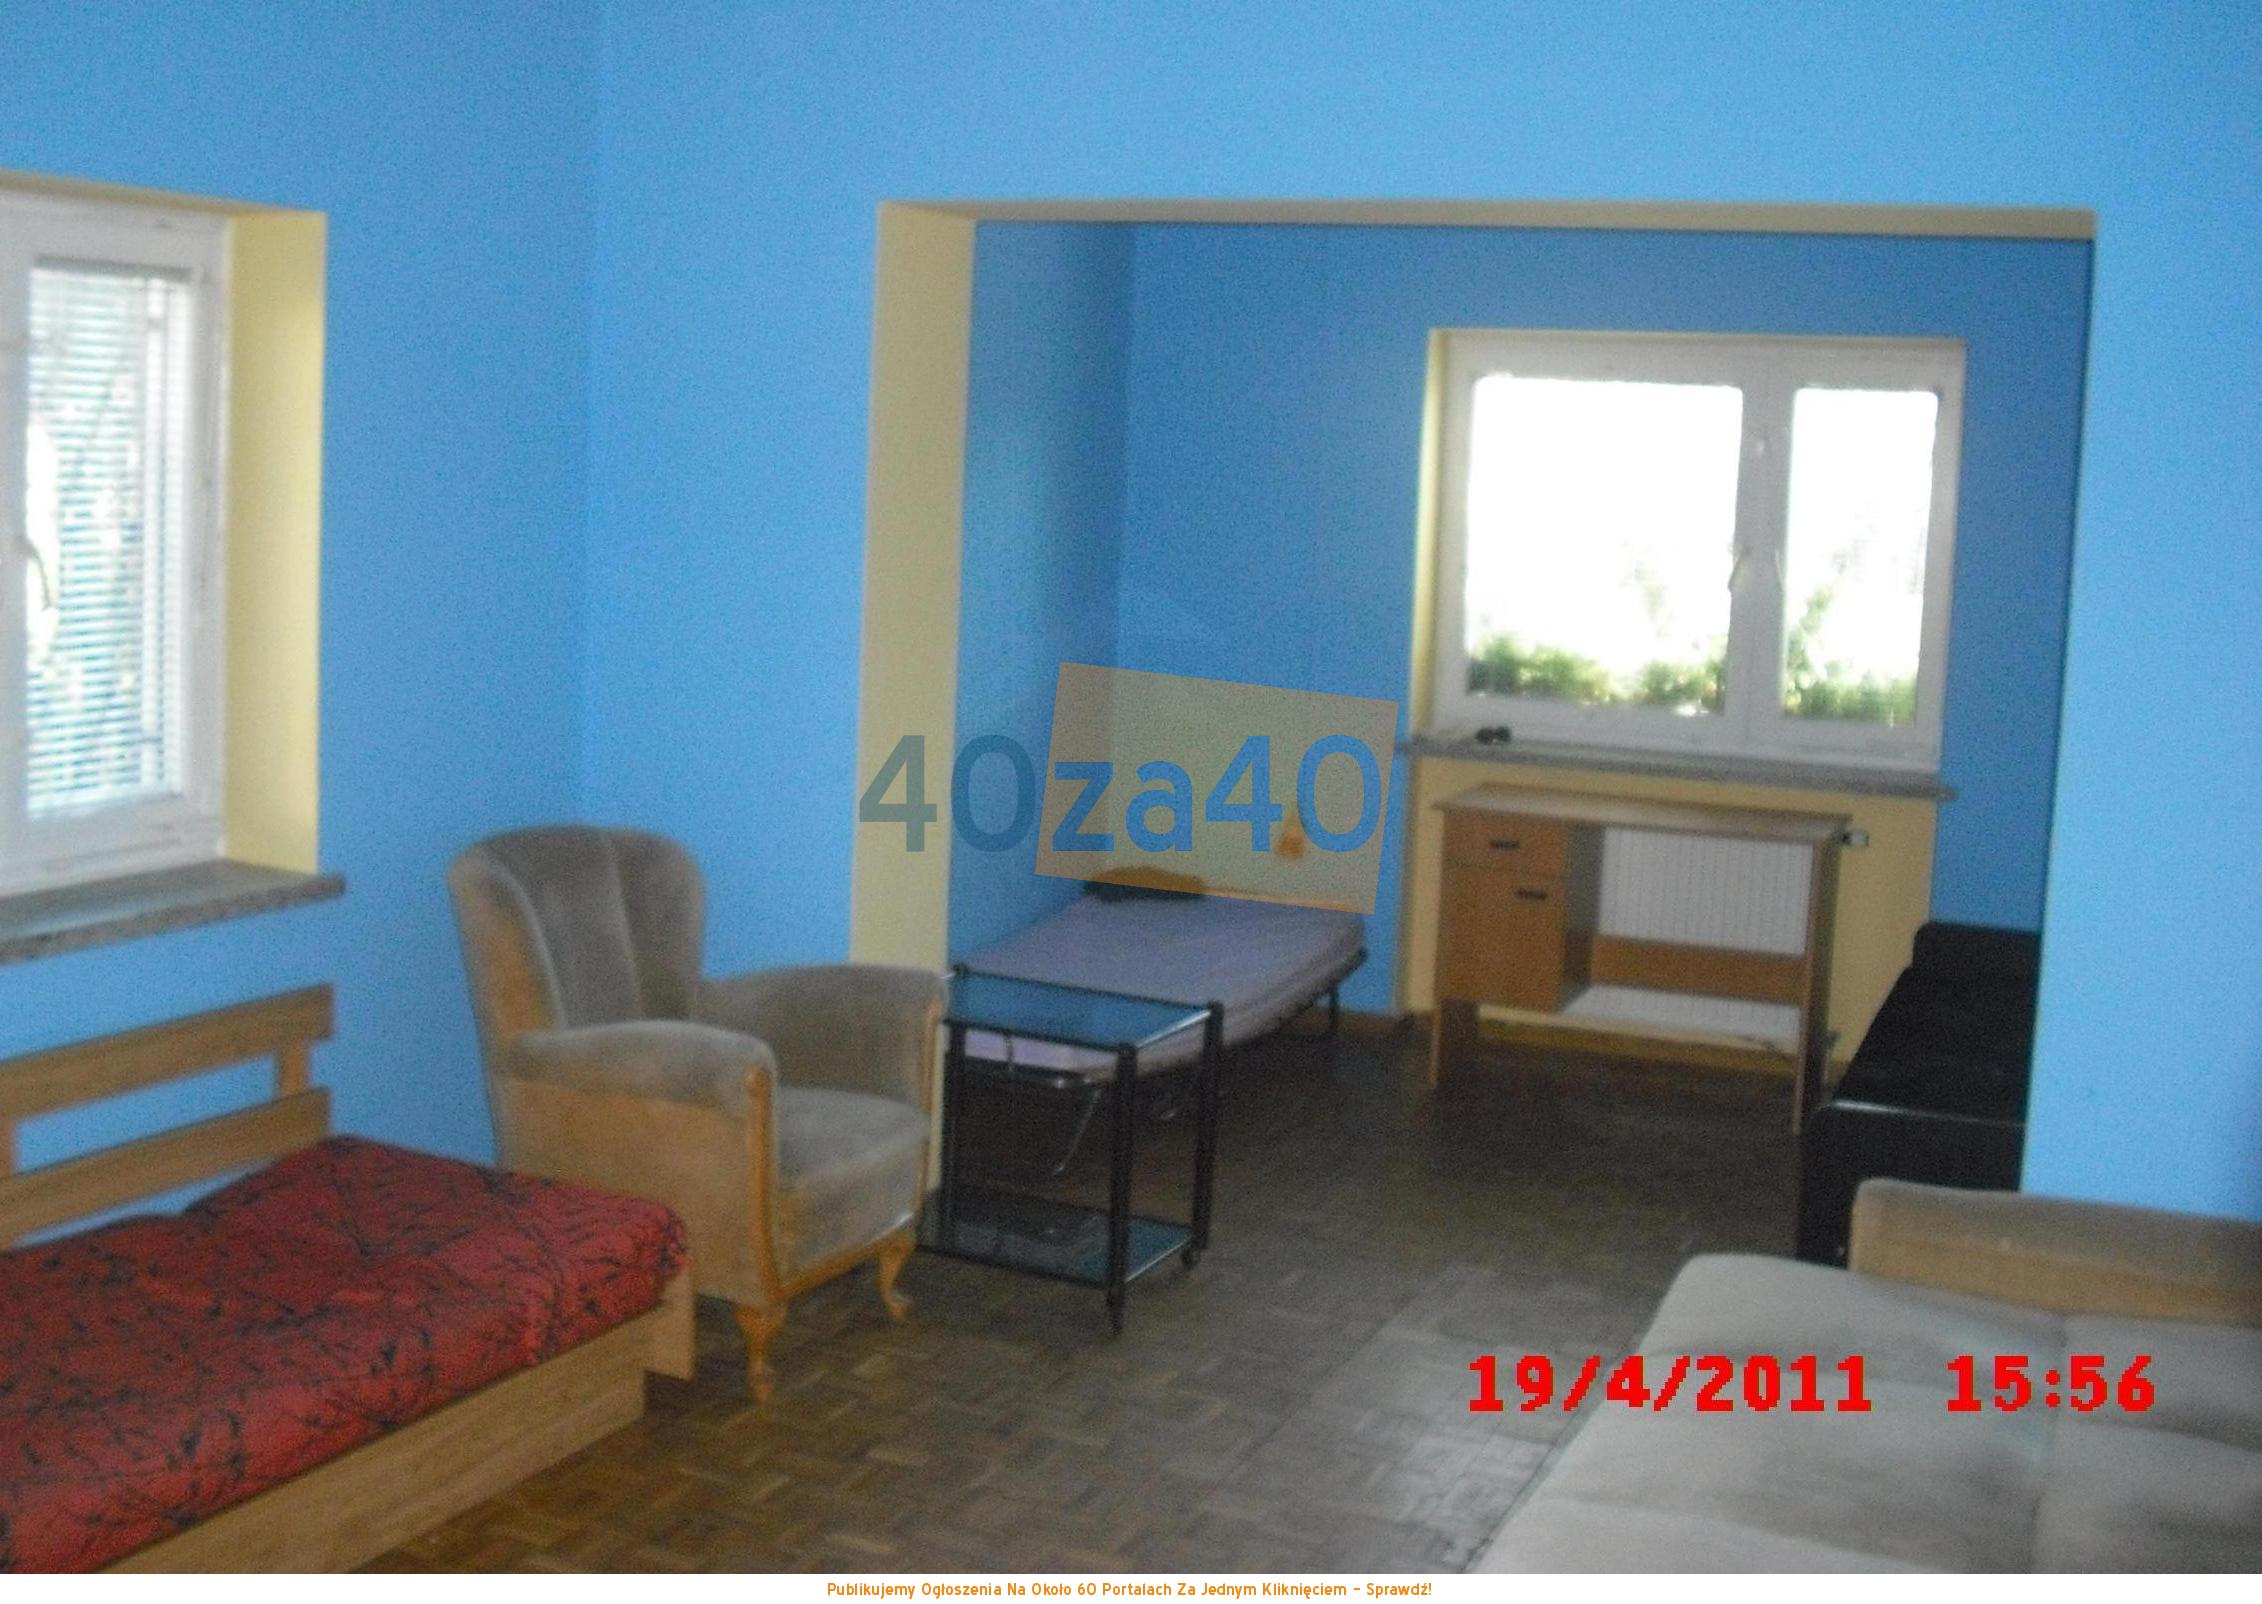 Mieszkanie do wynajęcia, pokoje: 3, cena: 2 500,00 PLN, Zielonka, kontakt: 507-669-437